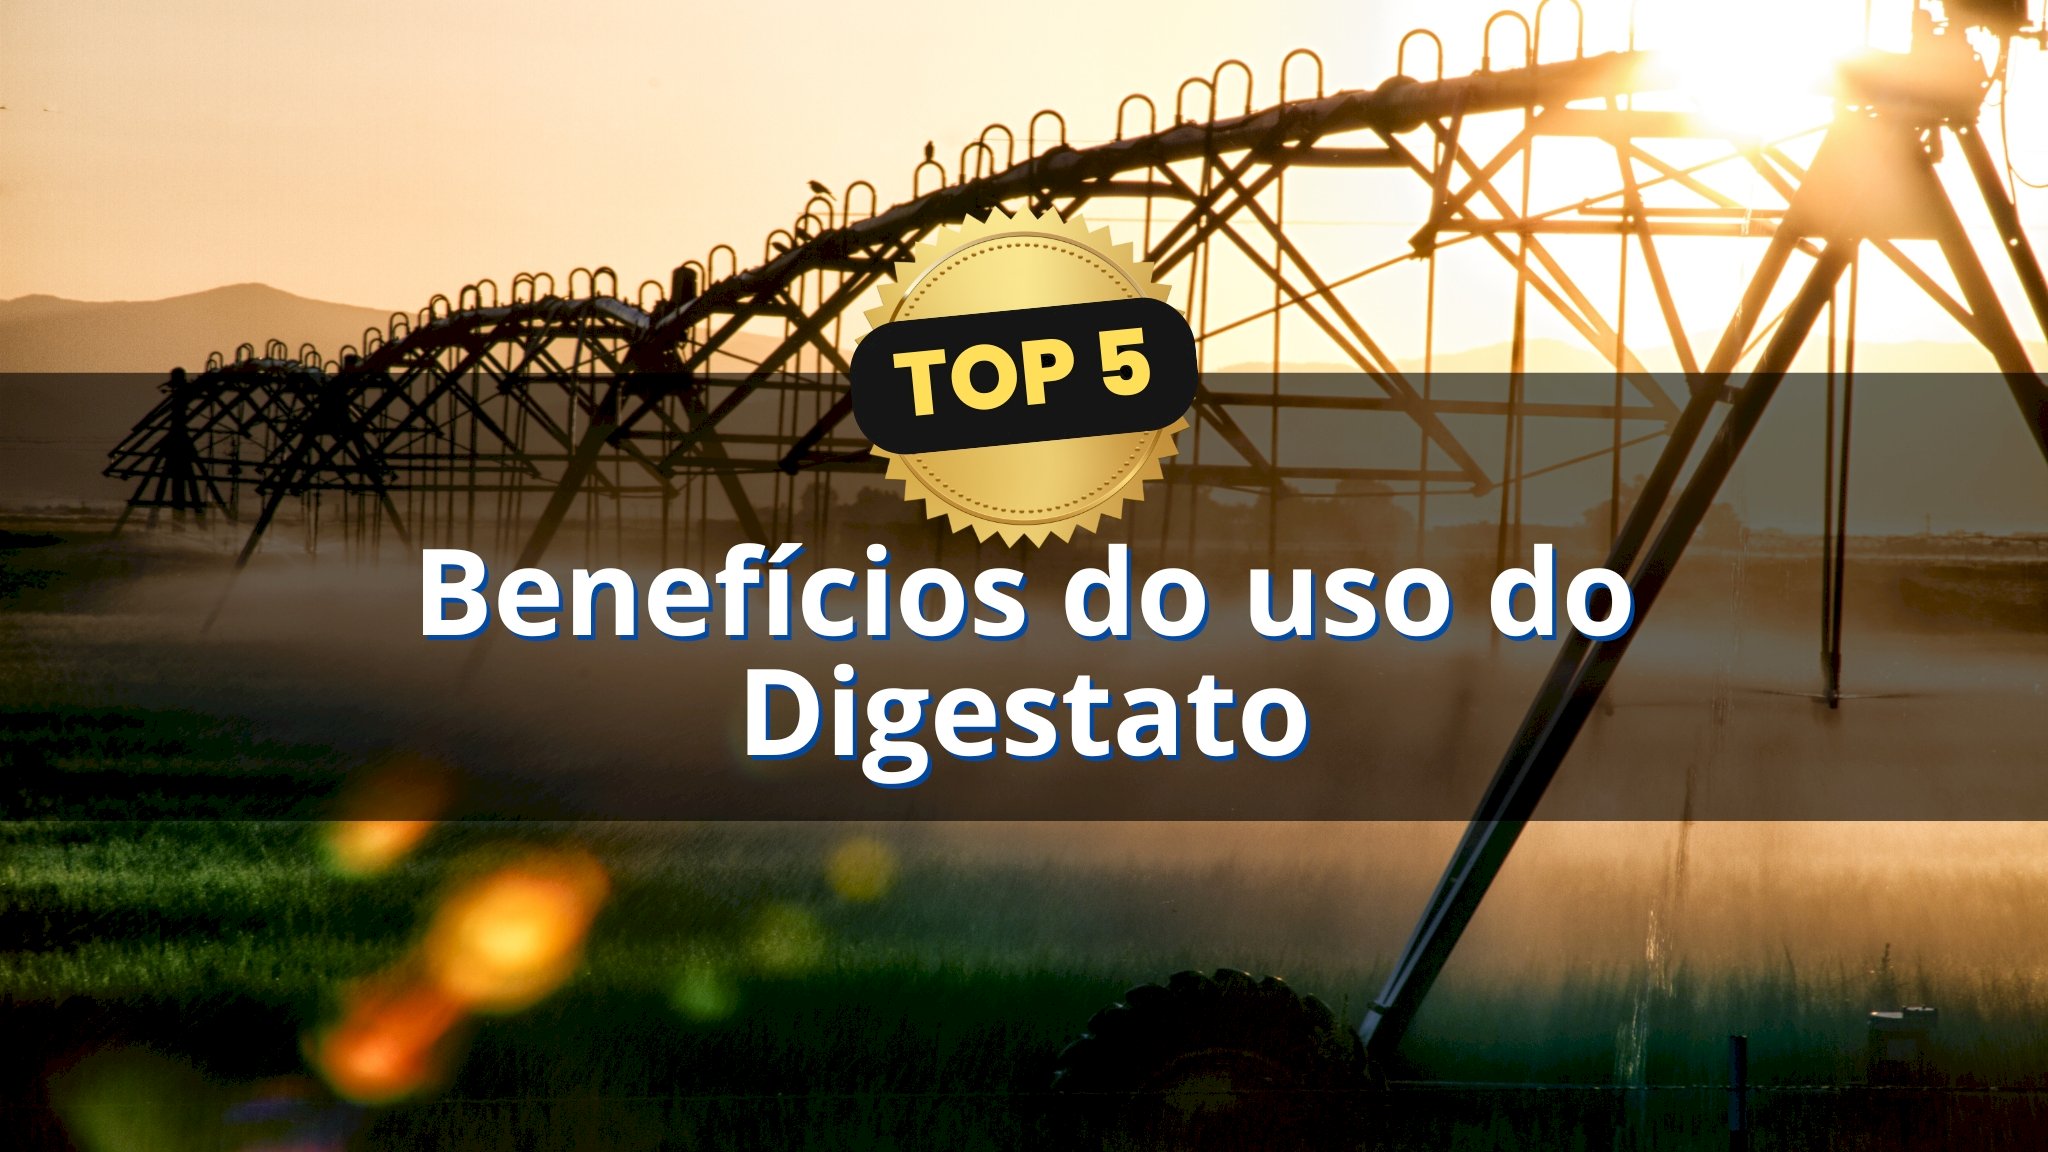 Top 5: Benefícios do uso do Digestato